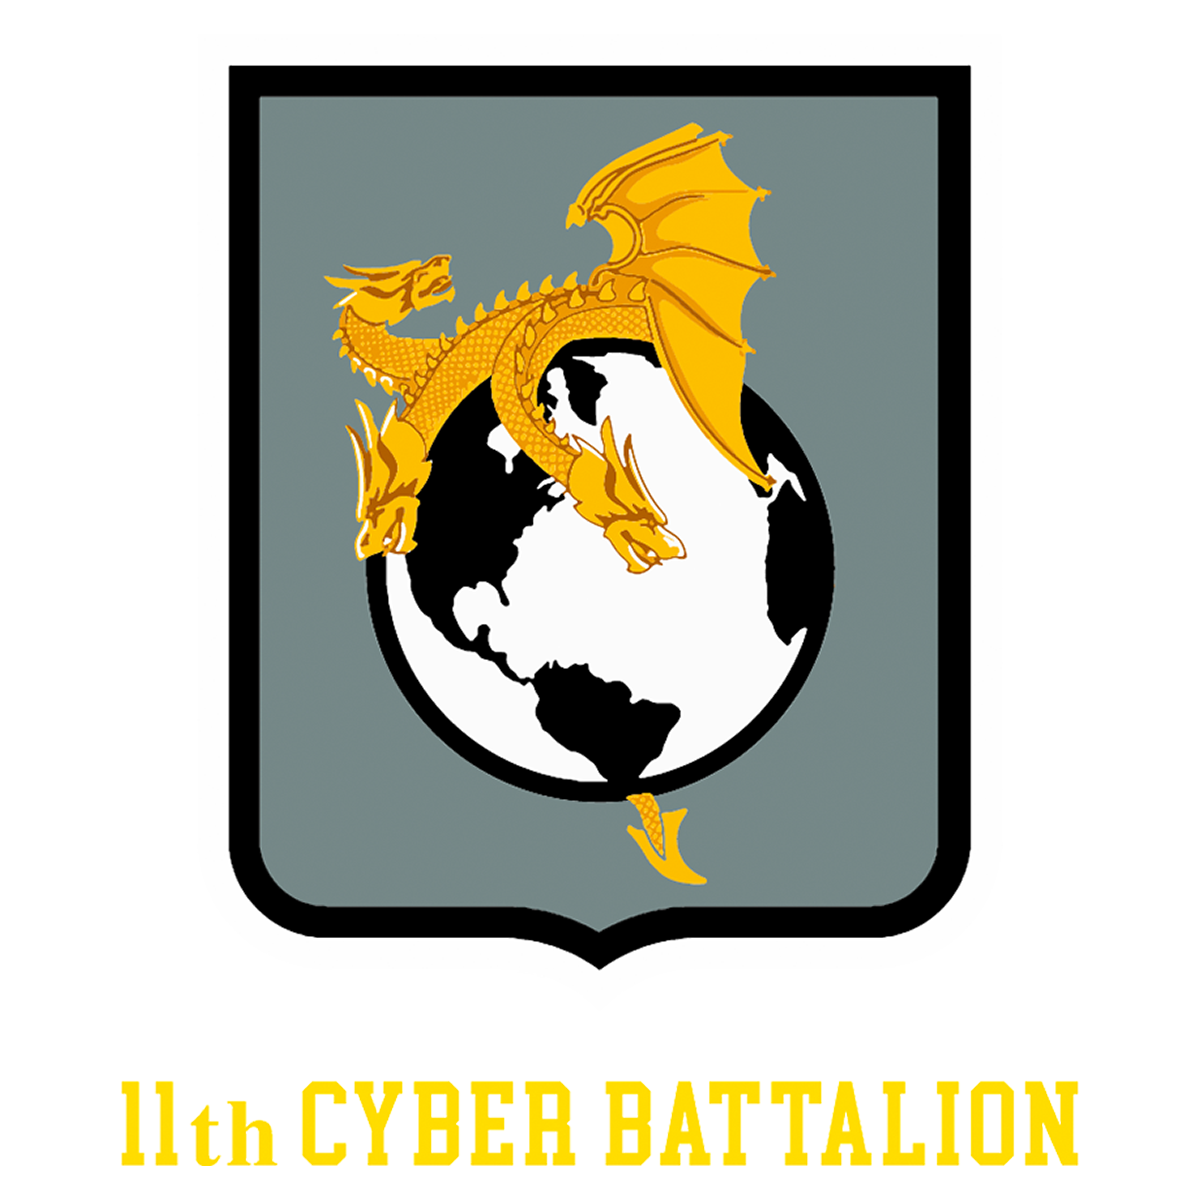 11th Cyber Battalion Team Store